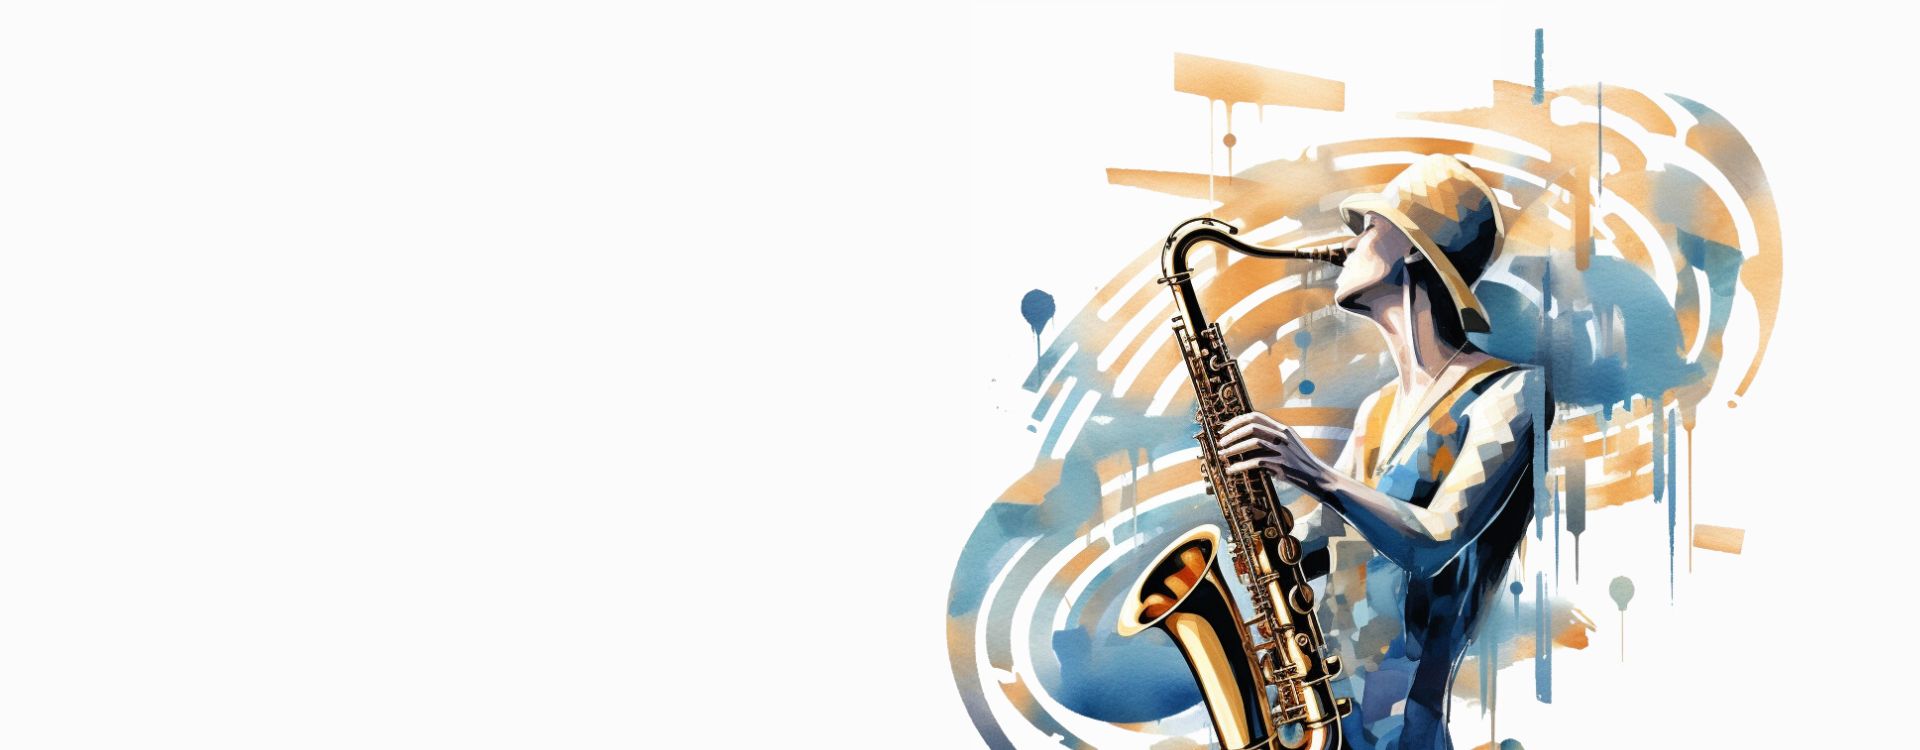 Imagen de cabecera del concierto Ritmos de Moda de la UAM. Se muestra una chica tocando el saxofón